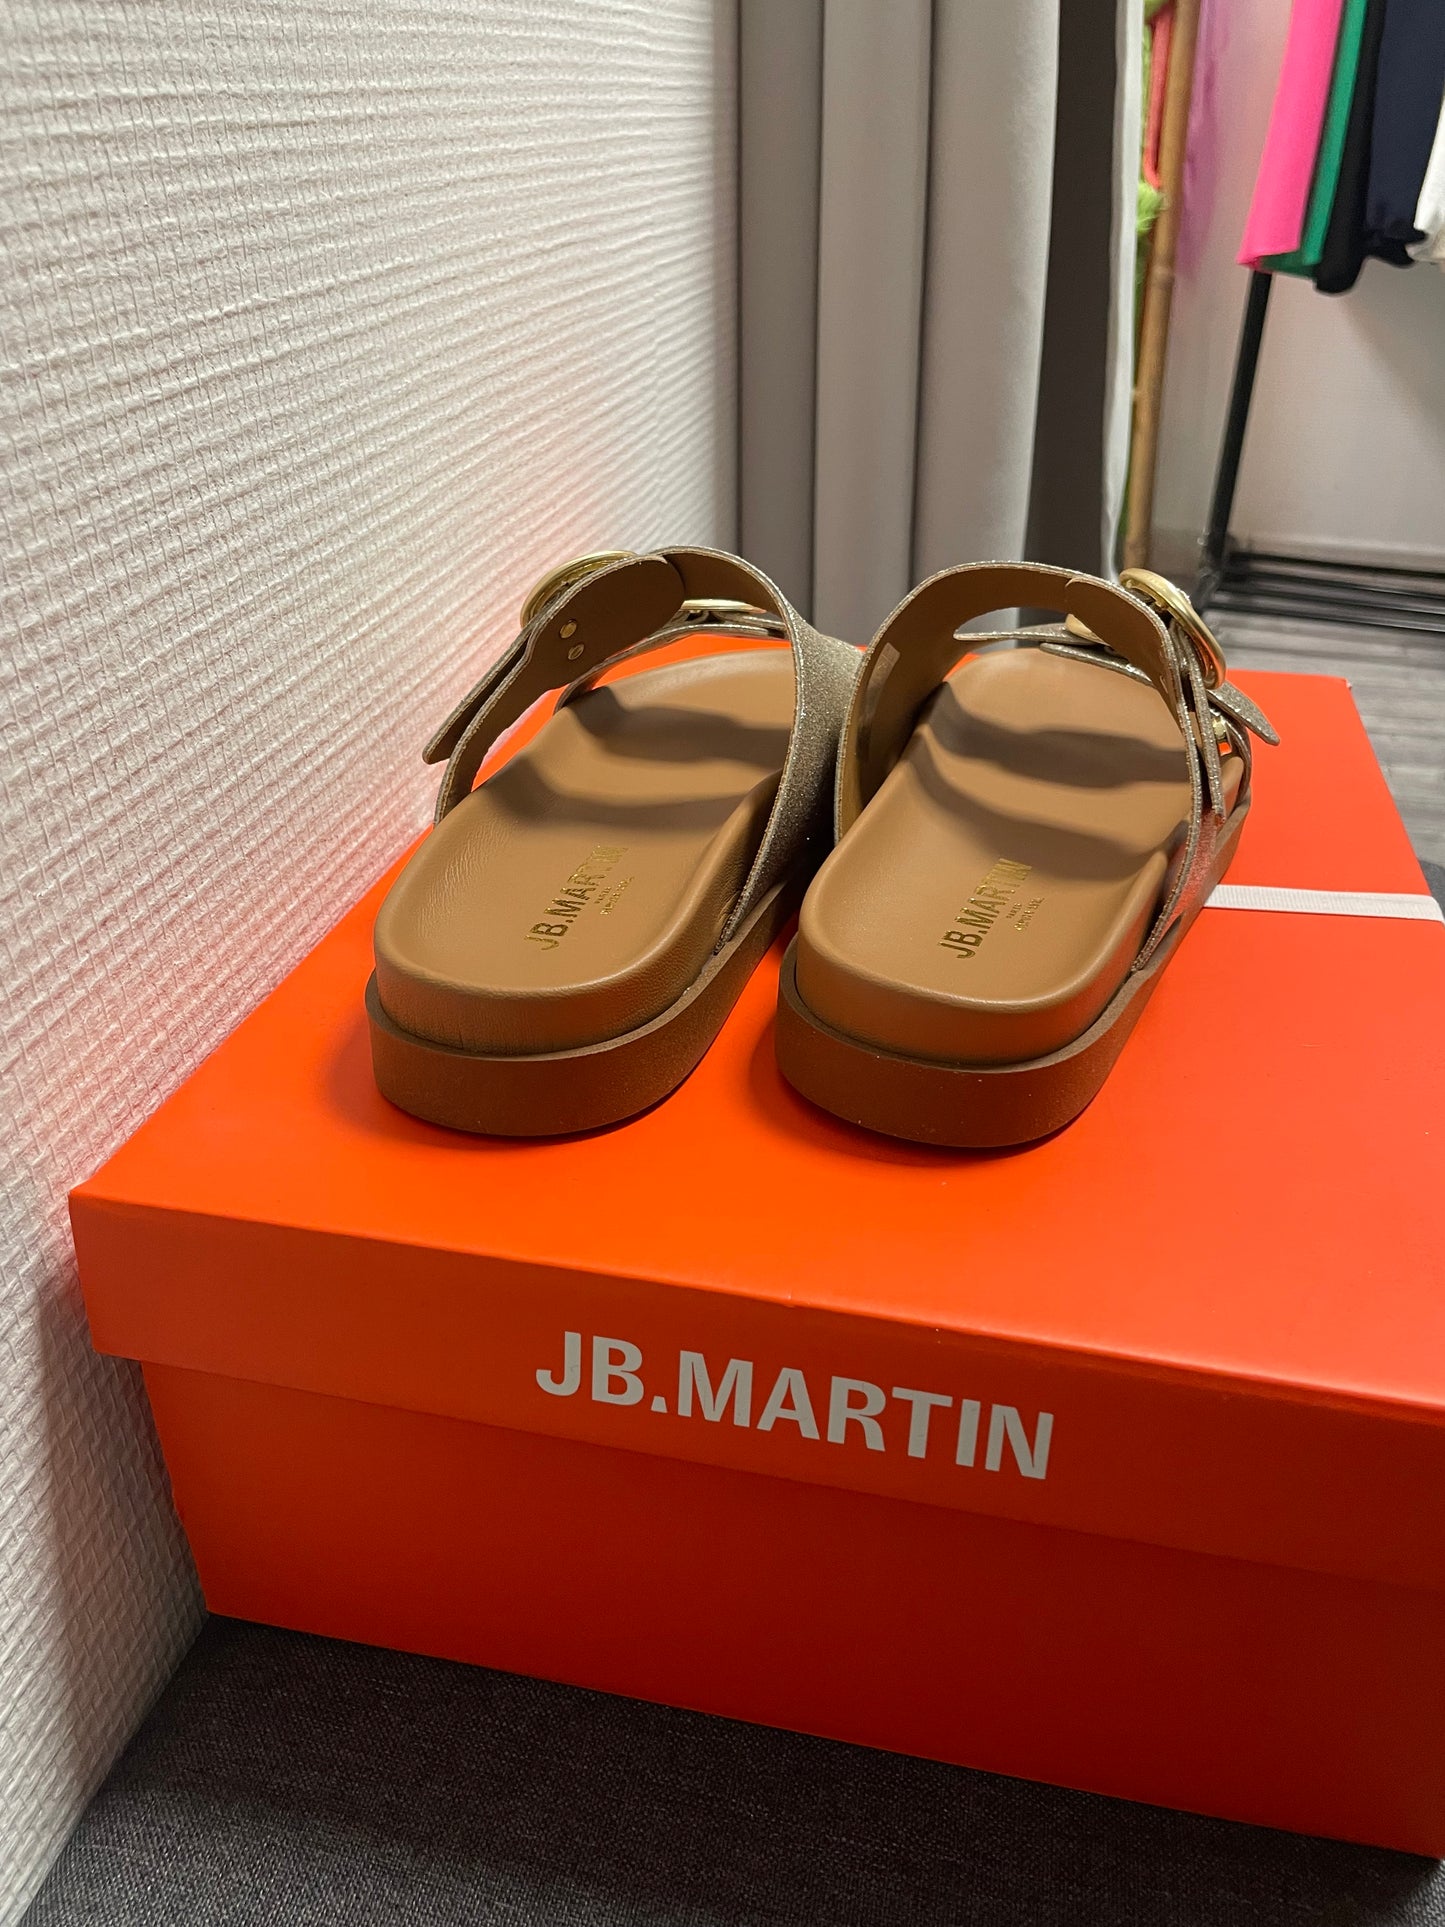 AUDACE JB.MARTIN sandals